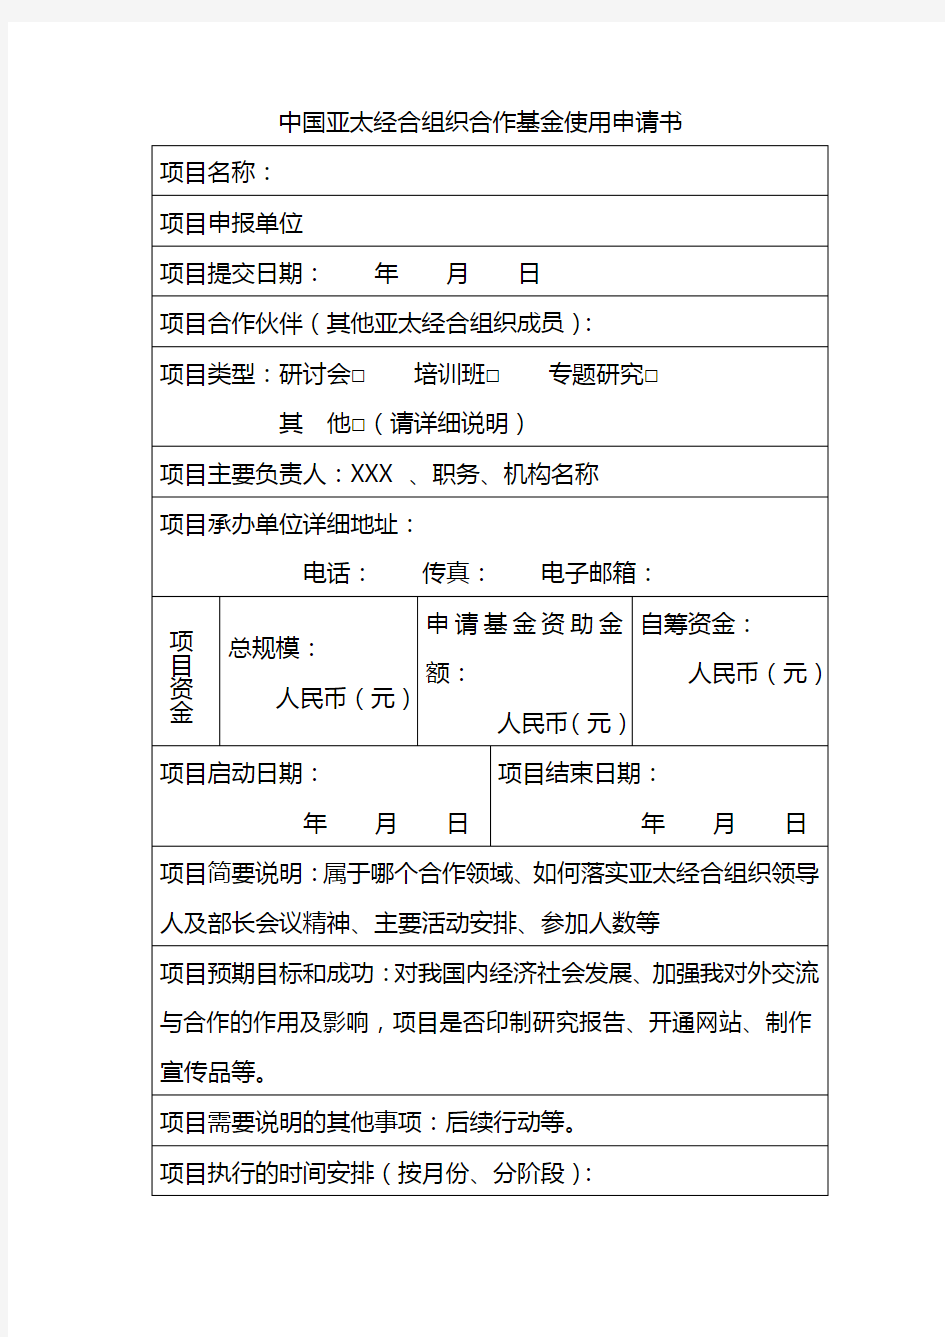 中国亚太经合组织合作基金使用申请书【模板】